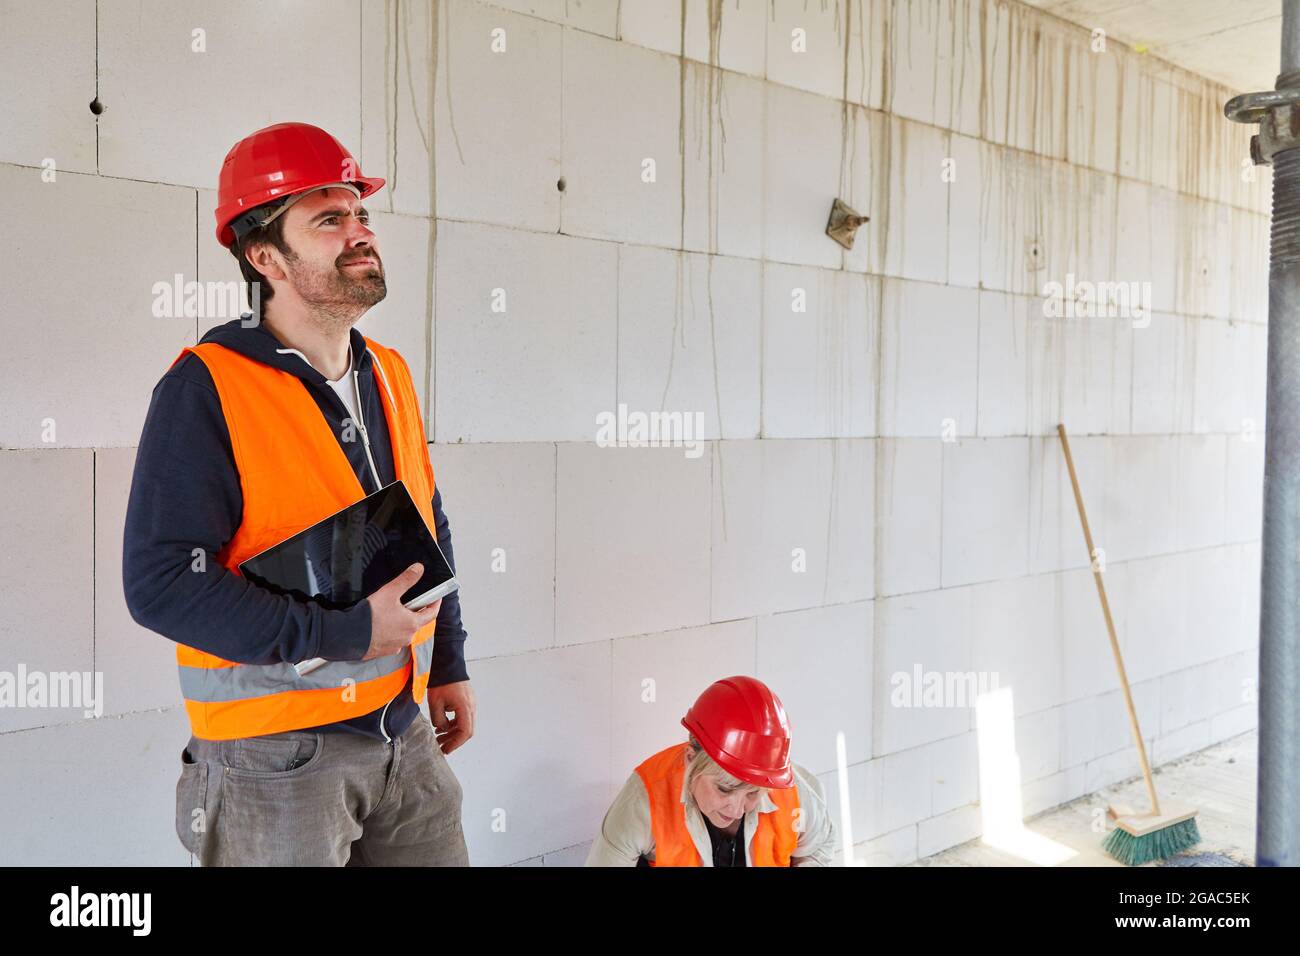 Ein Architekt oder Gutachter findet bei einer Inspektion auf der Baustelle im Rohbau Konstruktionsfehler Stockfoto